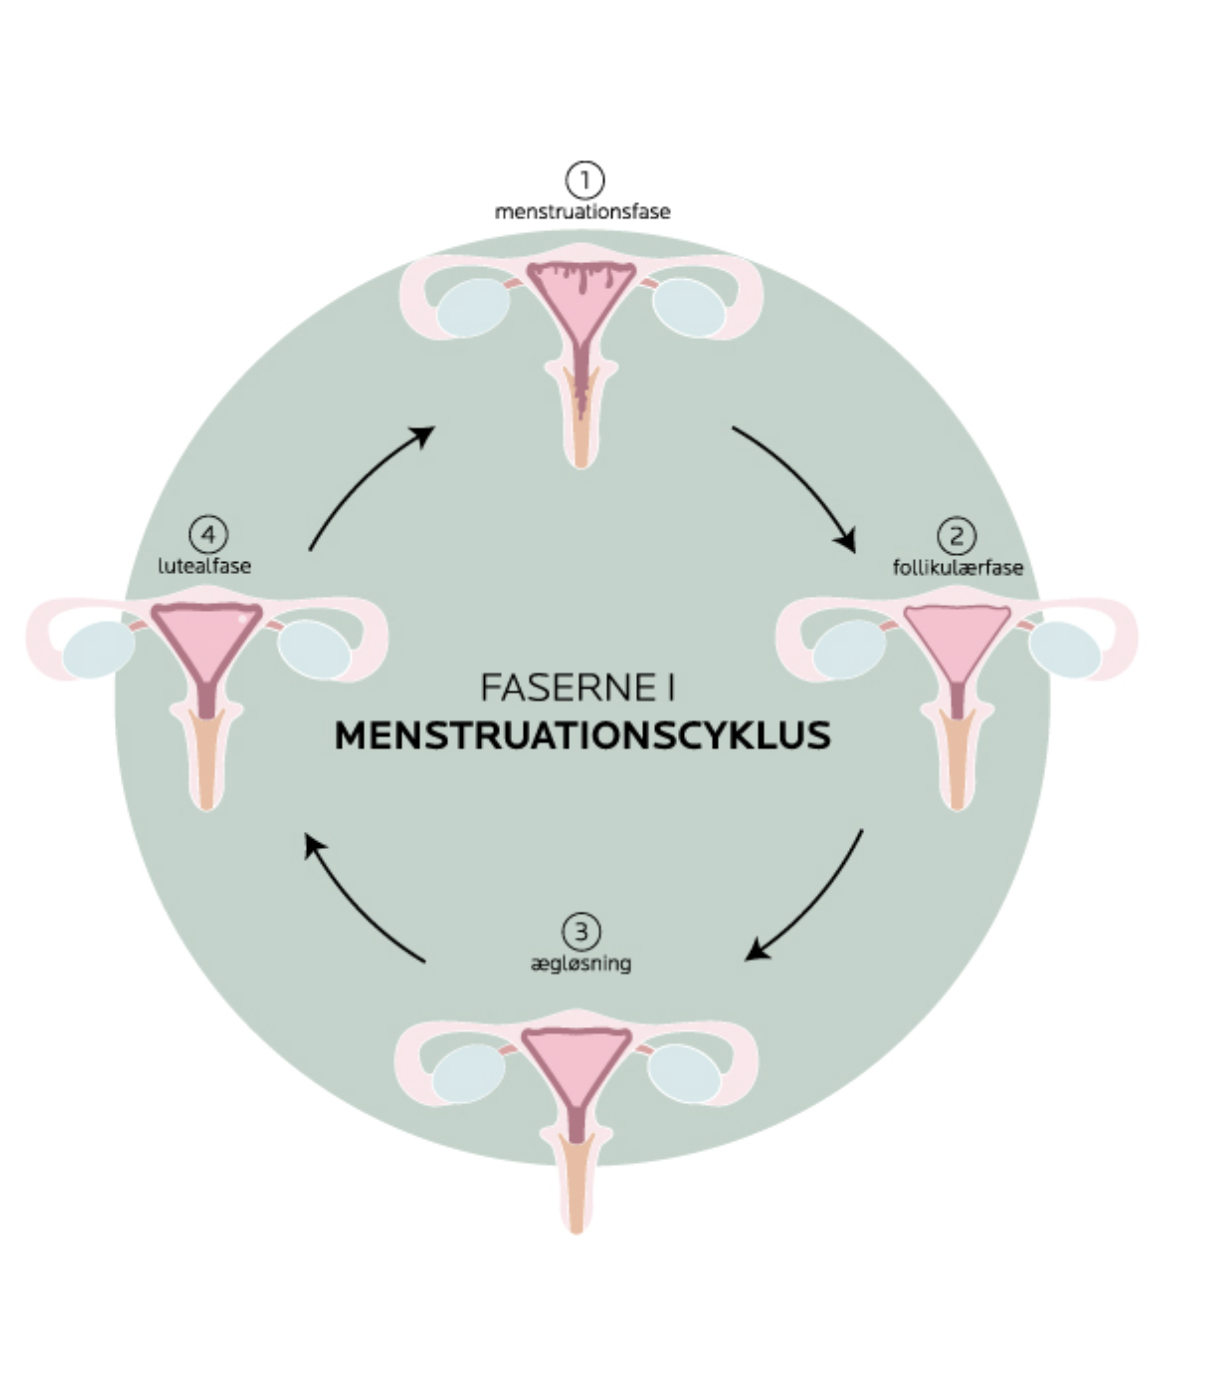 faserne i mensturation